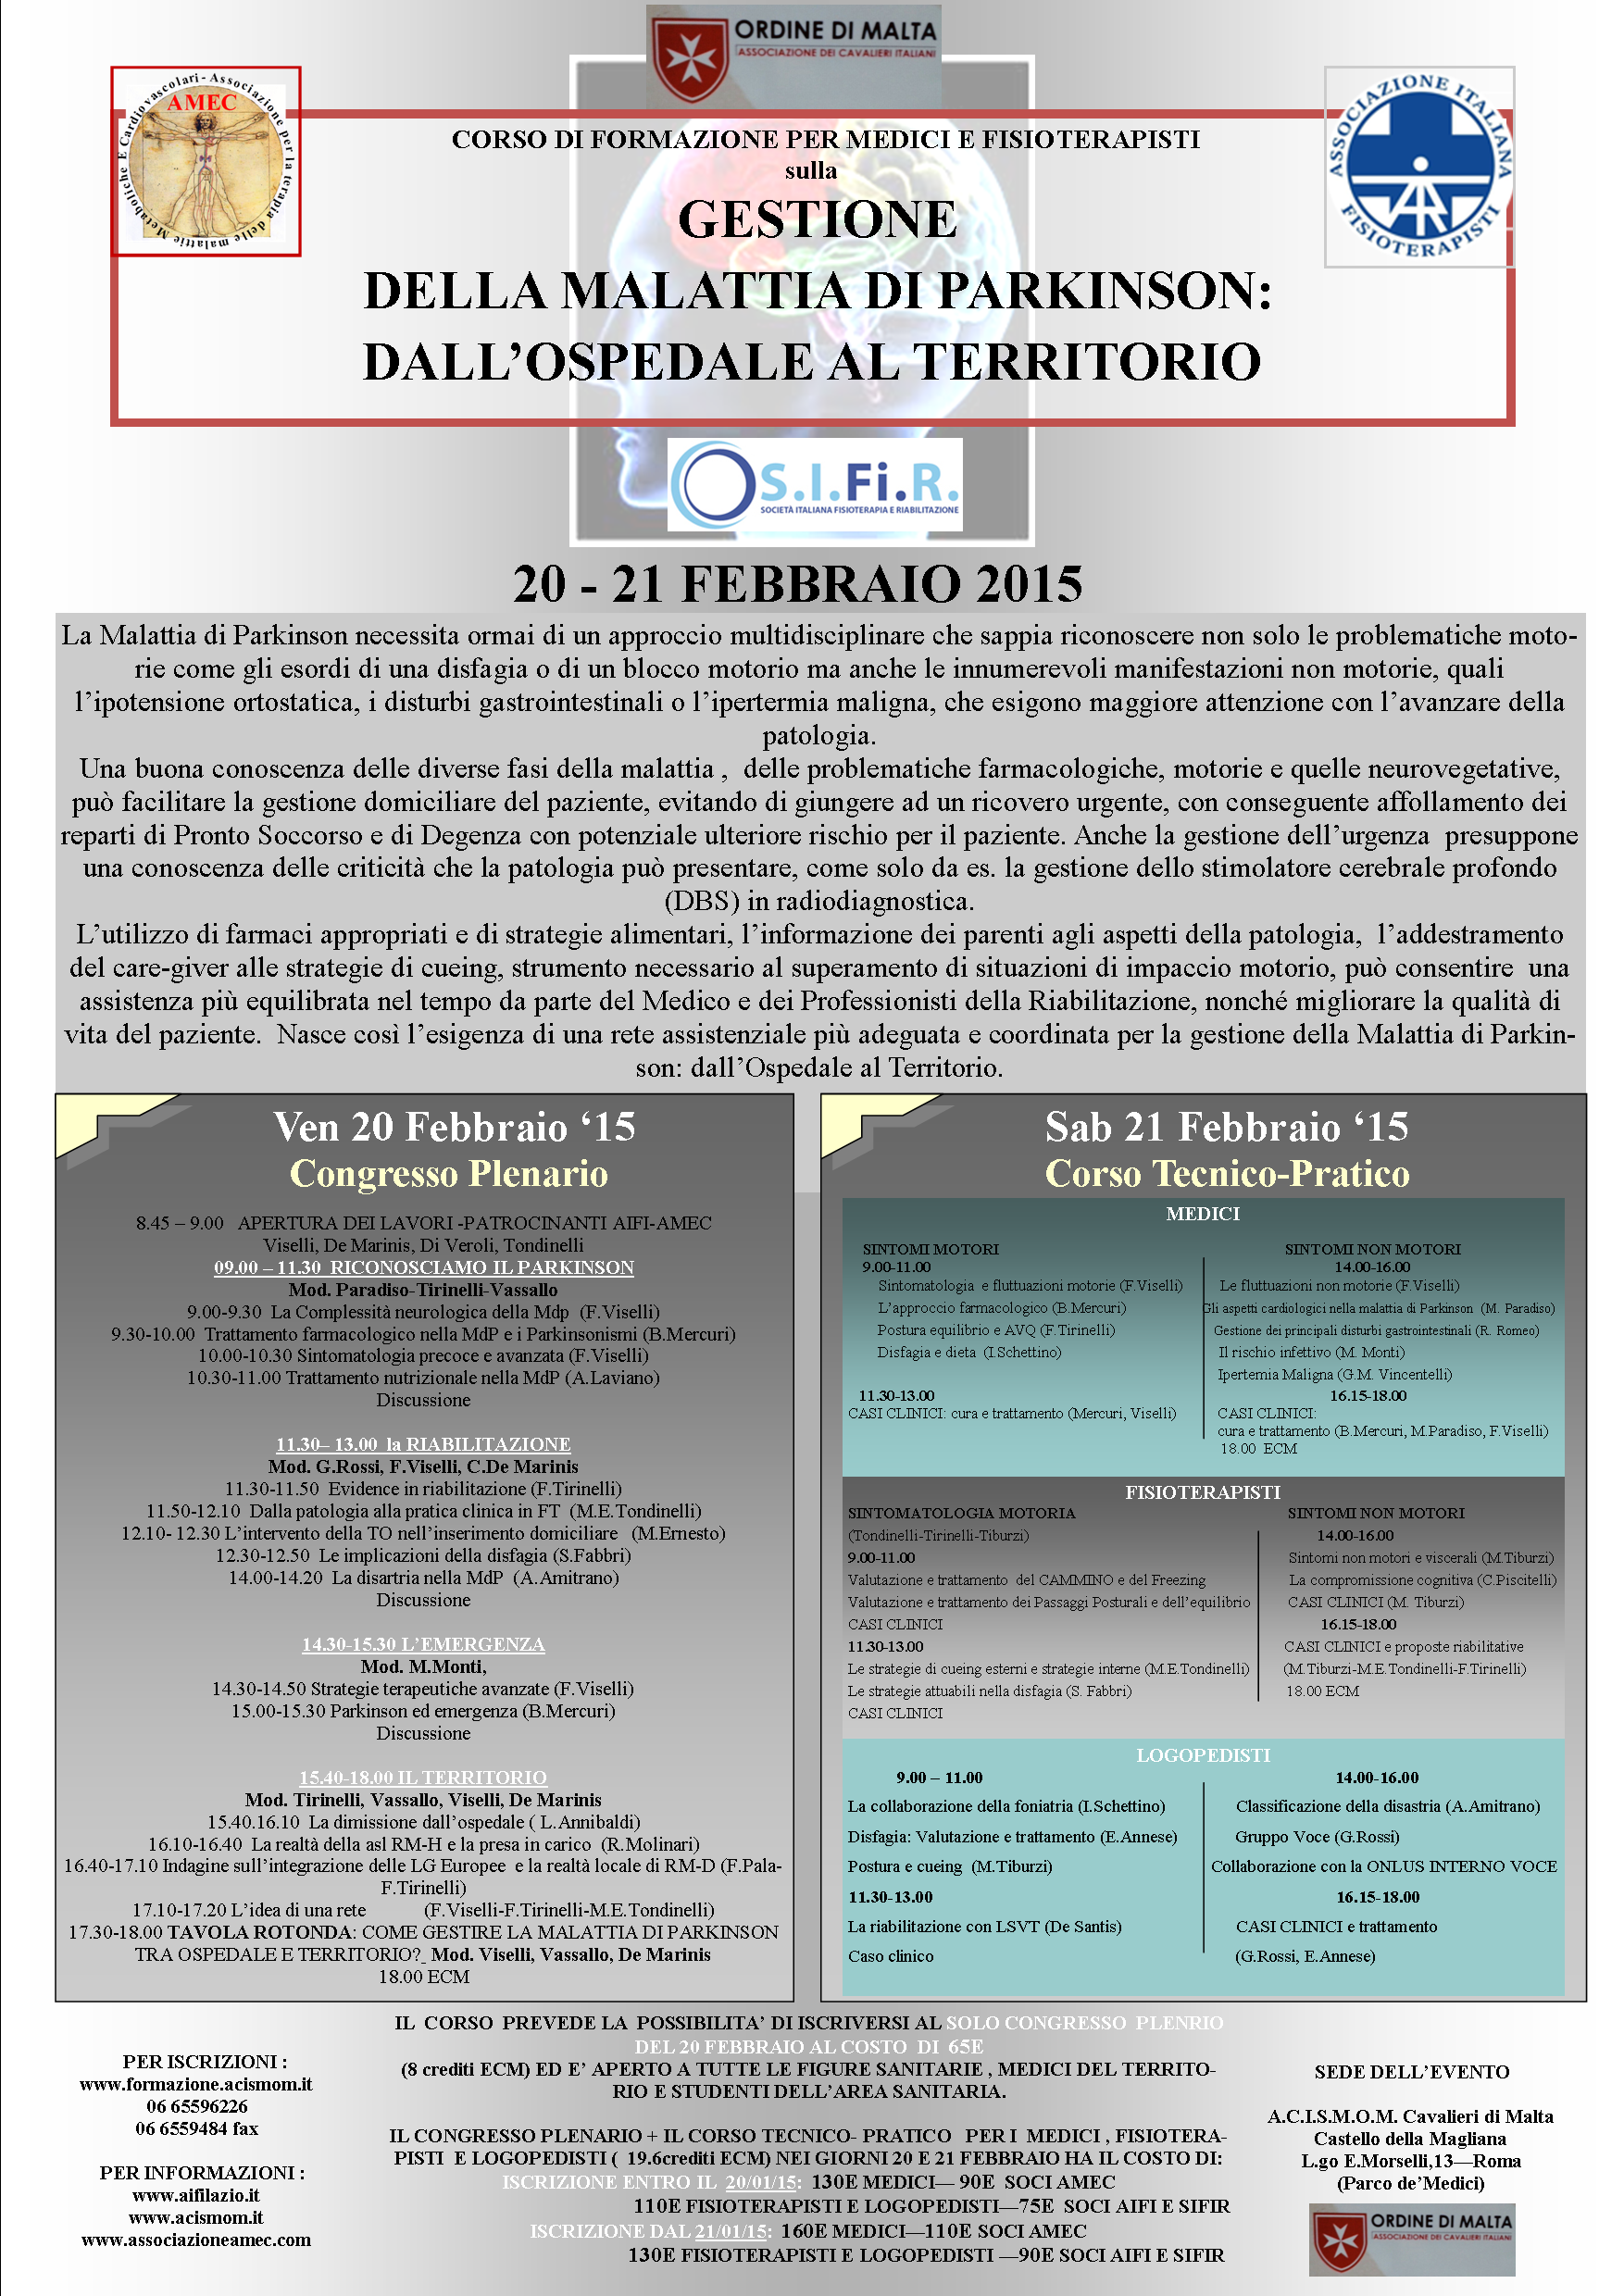 Corso di formazione sulla gestione della Malattia di Parkinson. Roma, 21-22 novembre 2014